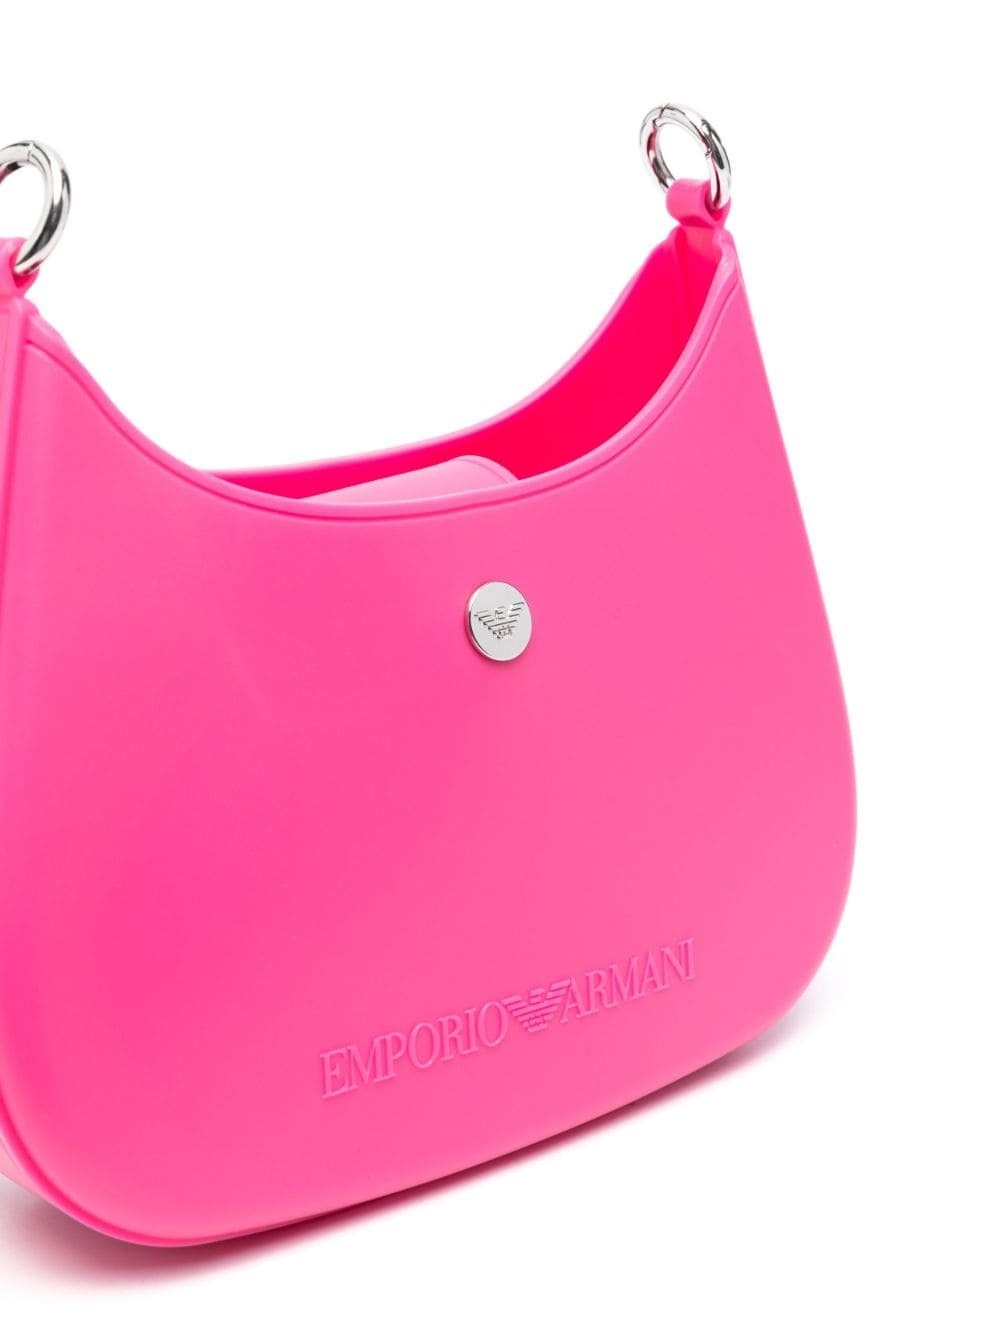 EMPORIO ARMANI - Small Shoulder Bag